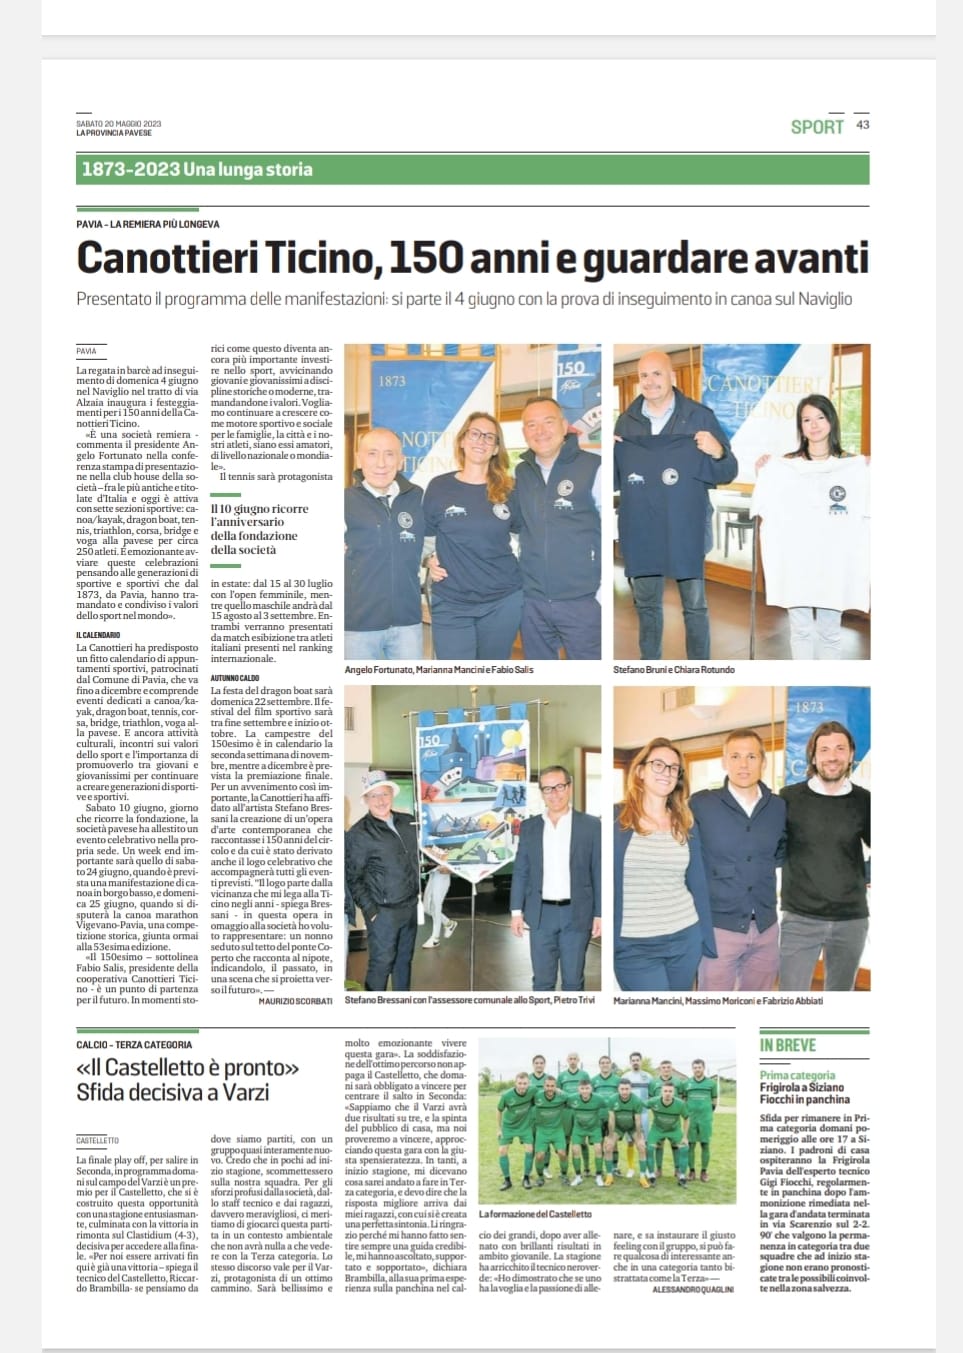 Scopri di più sull'articolo Canottieri Ticino 150 anni e guardare avanti